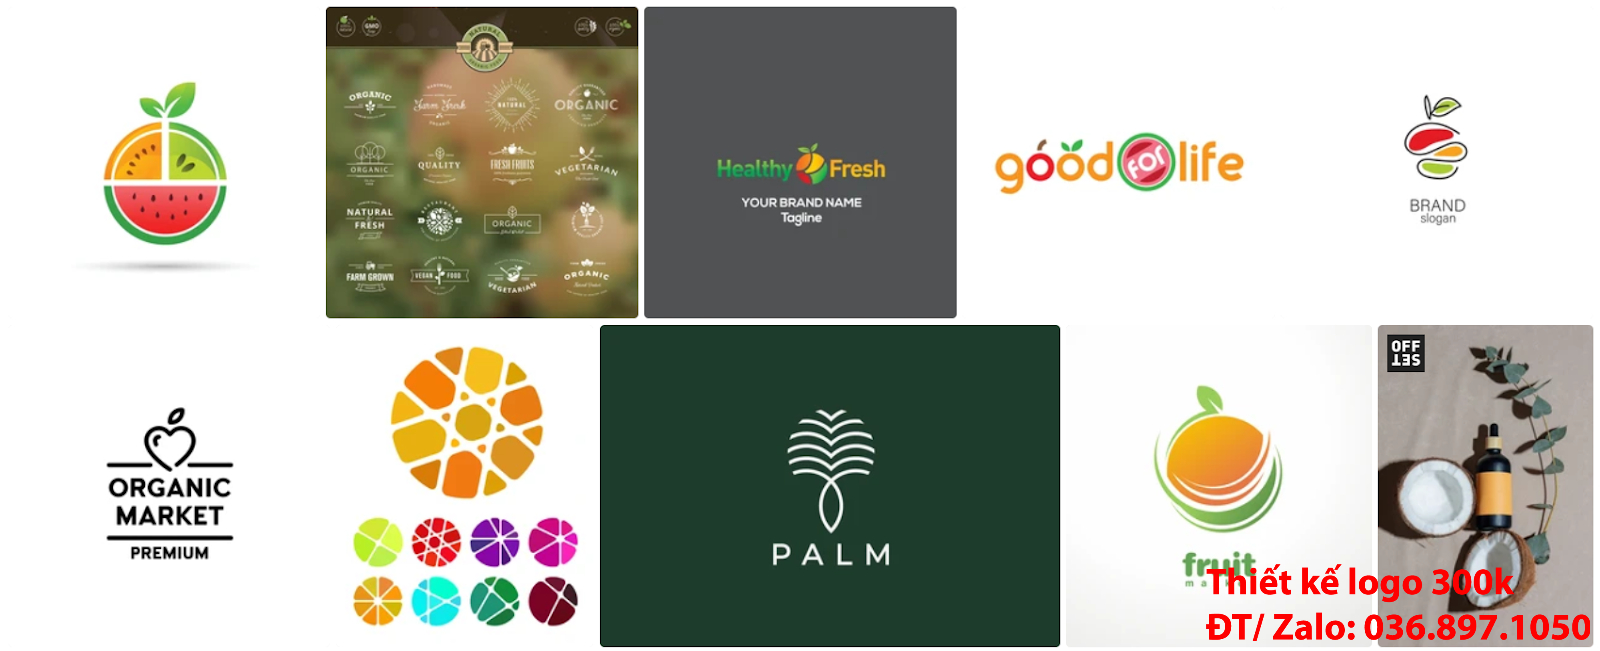 Tại Sài Gòn có dịch vụ chuyên nhận thiết kế Mẫu logo trái cây chuyên nghiệp chất lượng giá rẻ chỉ từ 300k